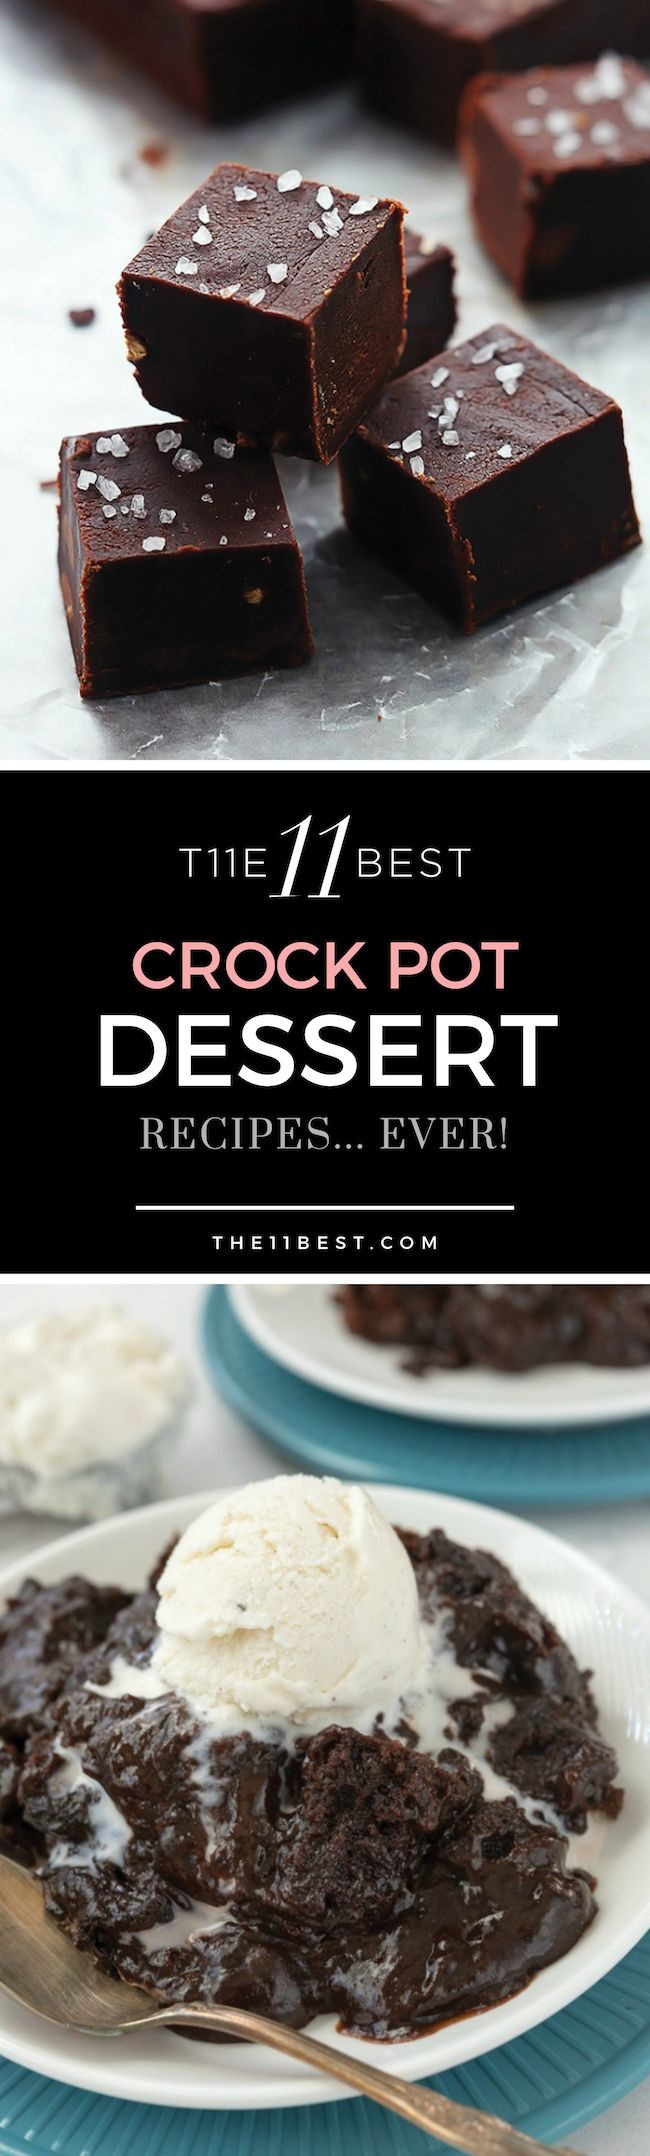 Crock Pot Desserts
 The BEST crock pot dessert recipes EVER